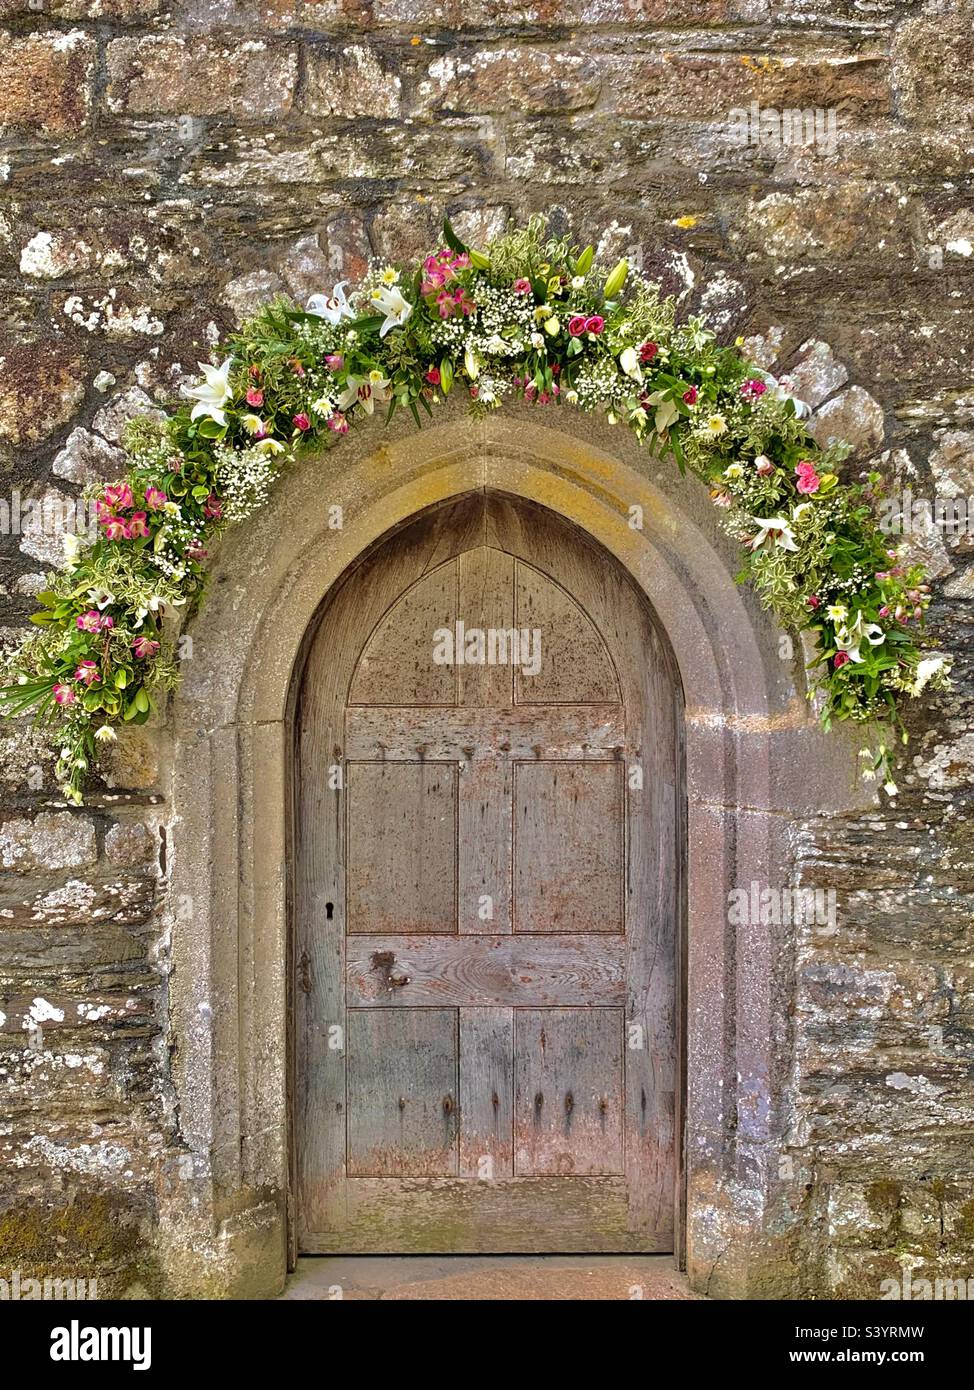 Magnifique arche normande en pierre sculptée avec une ancienne porte d'église en bois et une décoration florale pour un mariage à St juste dans l'église Roseland, en Cornouailles, en Angleterre, lors d'un après-midi d'été chaud Banque D'Images